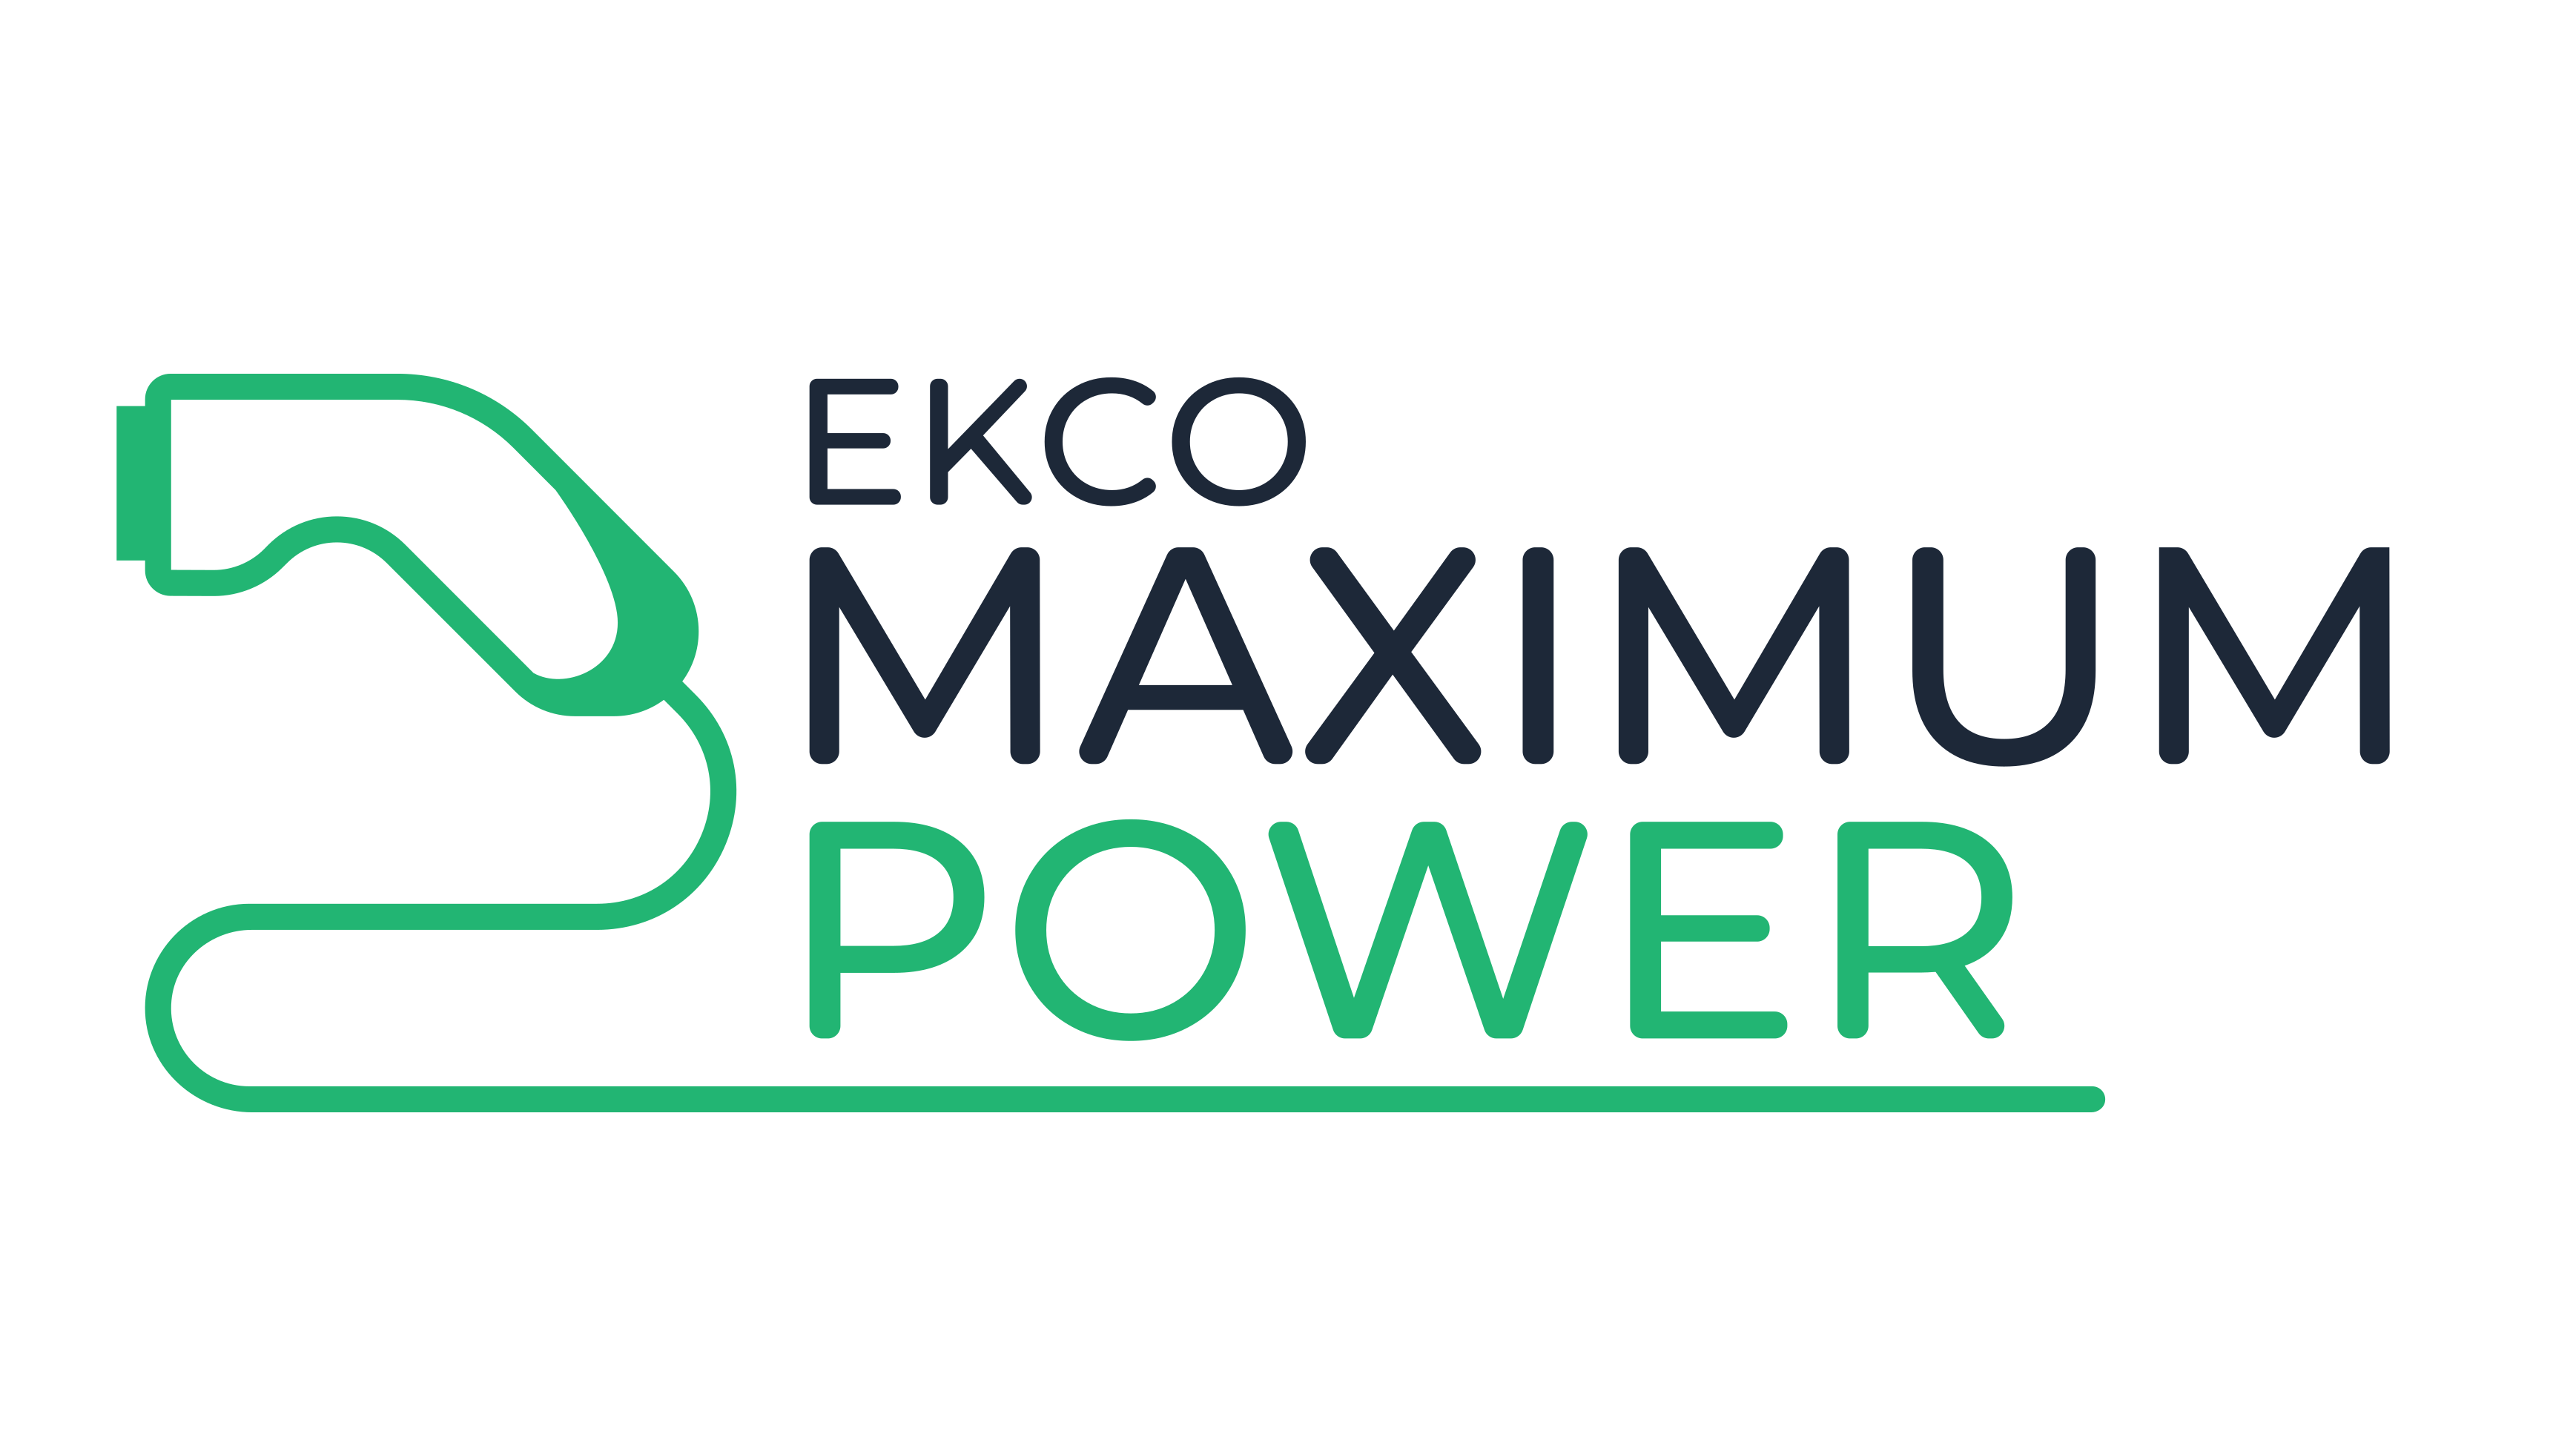 EKCO Maximum Power